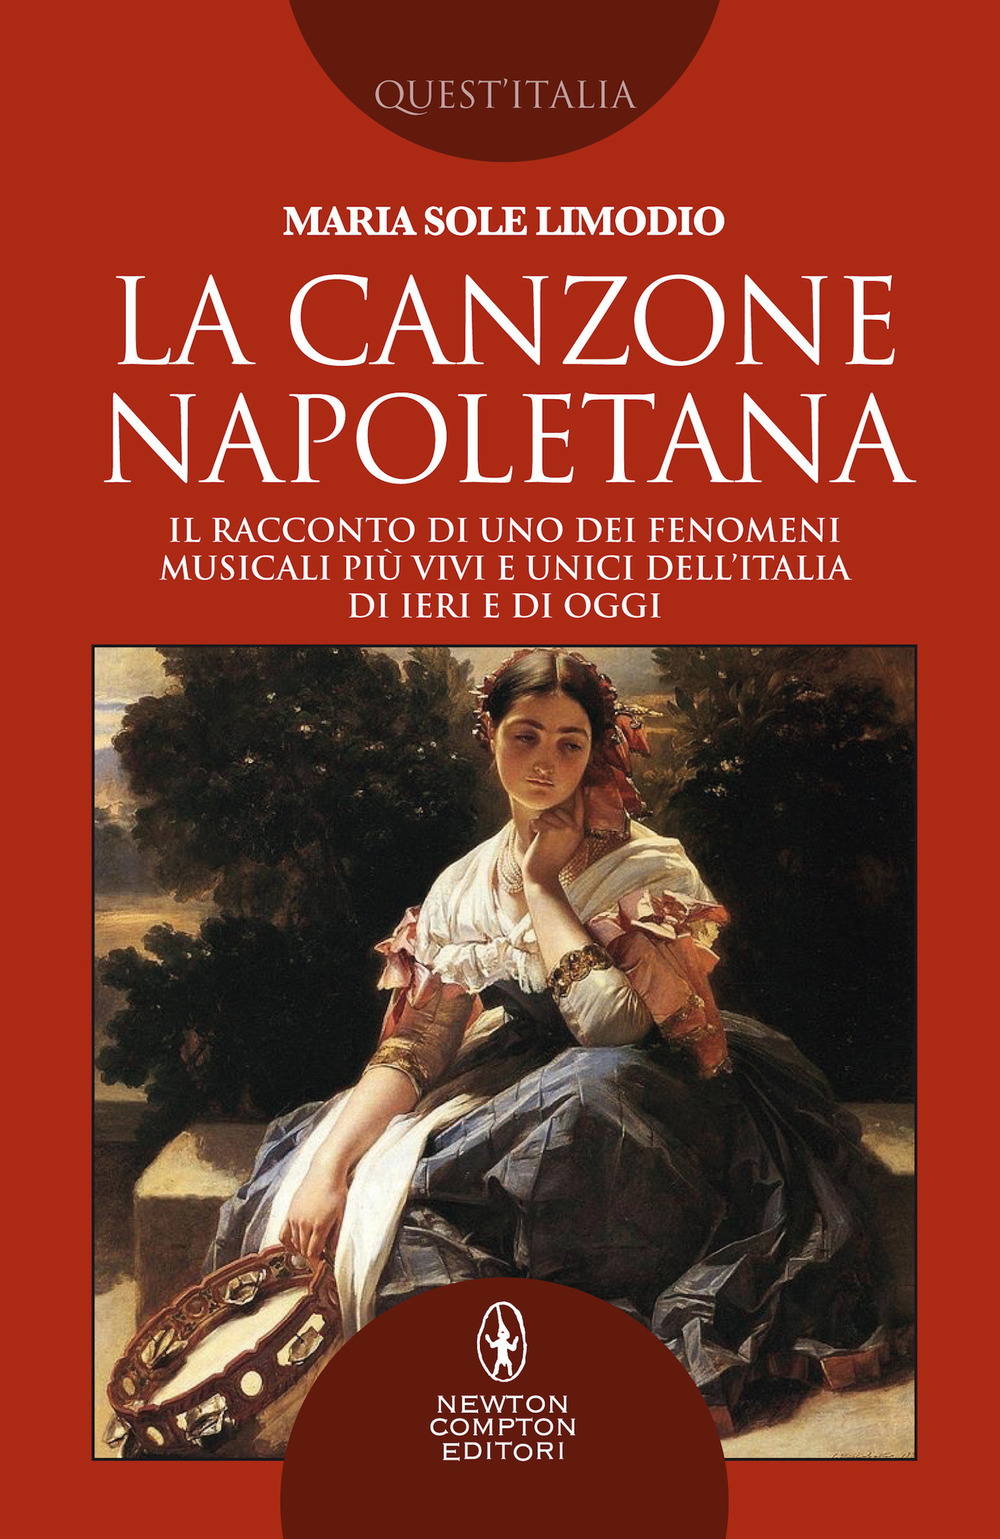 La canzone napoletana. Il racconto di uno dei fenomeni musicali più vivi e unici dell'Italia di ieri e di oggi